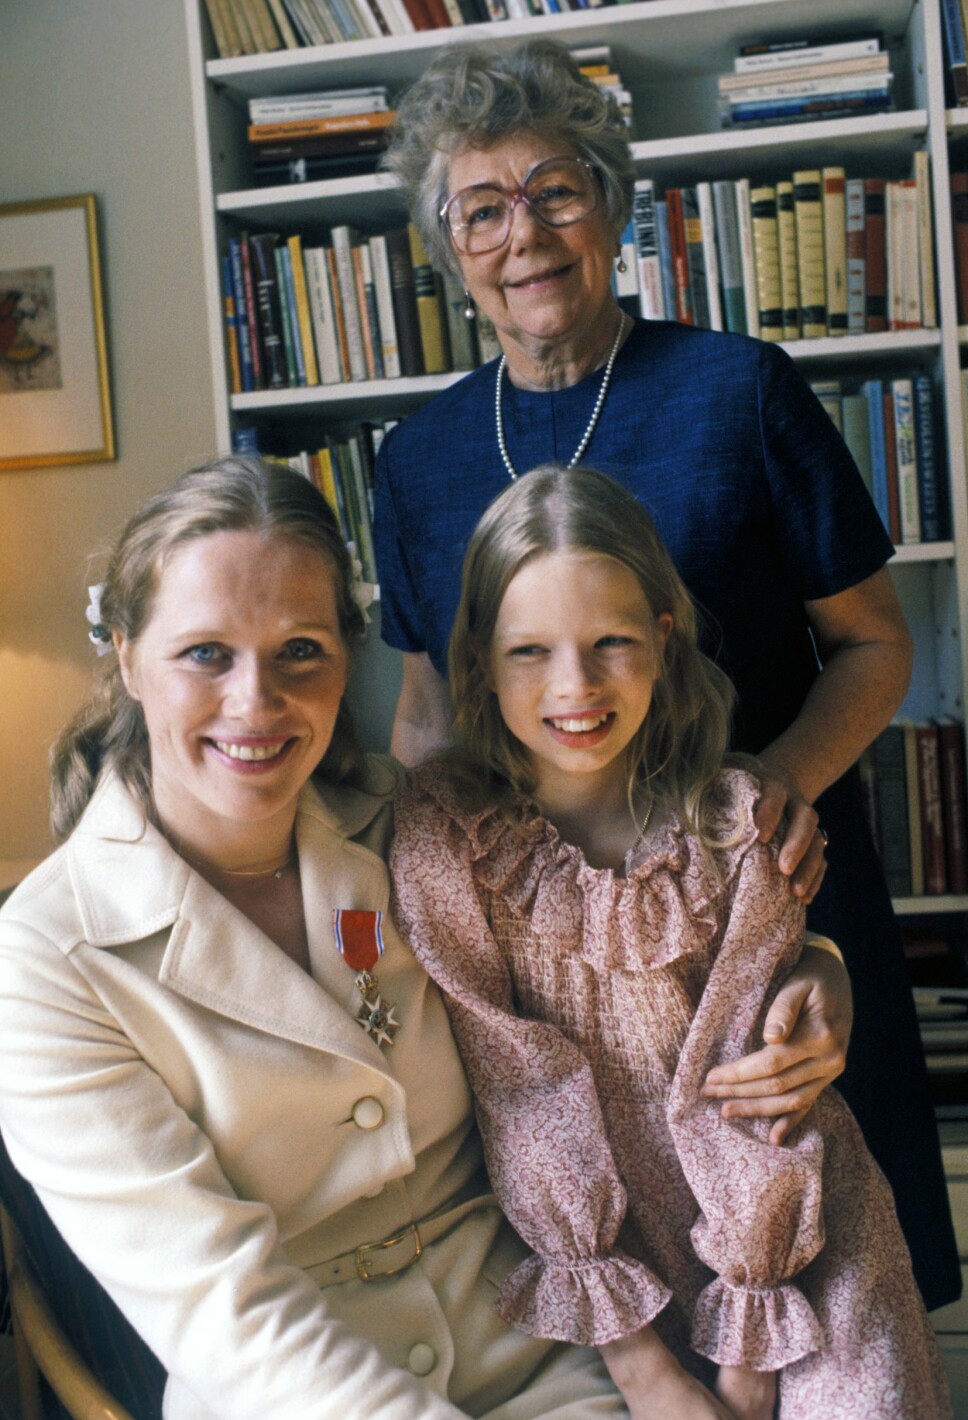 UTALLIGE UTMERKELSER: I 1977 ble Liv utnevnt til ridder av Den Kongelige St. Olavs Orden, for sin allsidige kunstneriske virksomhet. Datteren Linn og mor Janna var med på feiringen. I 2005 ble hun utnevnt til Kommandør med stjerne av samme orden.